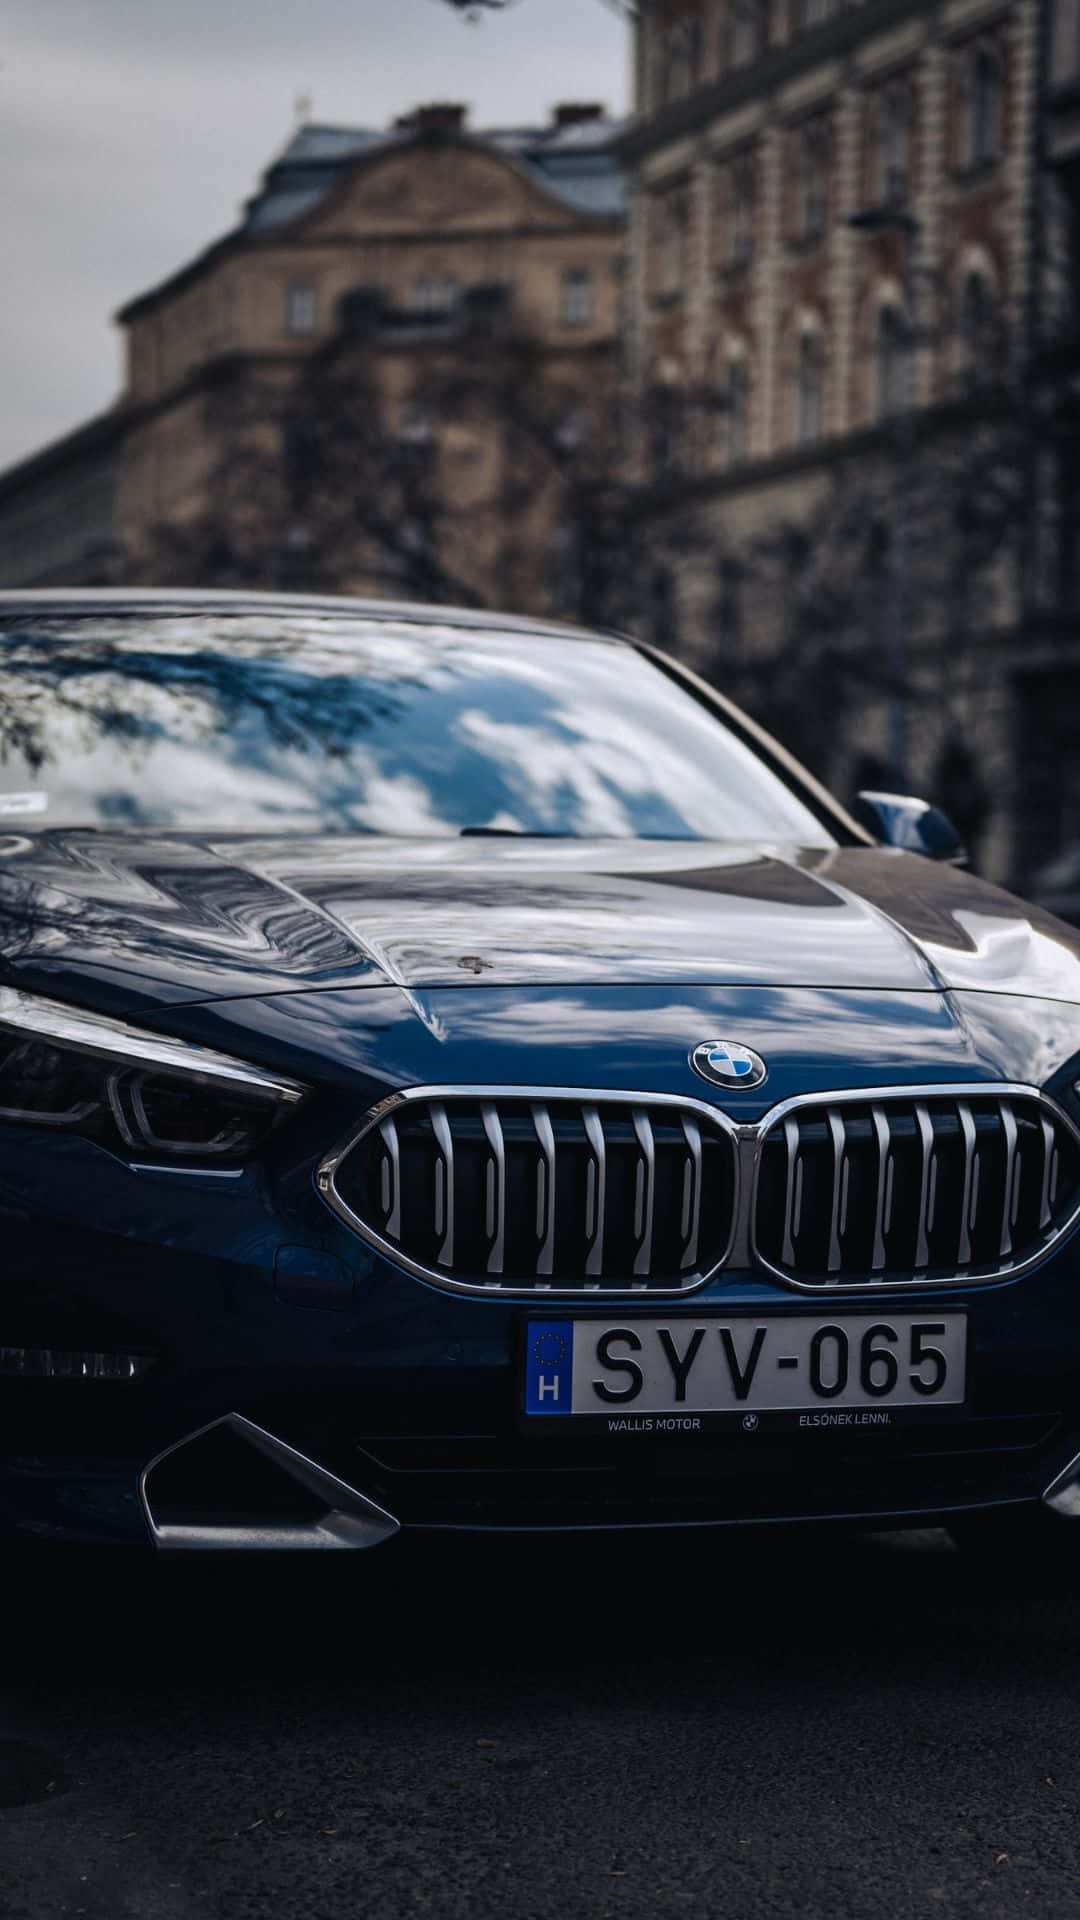 Tag din BMW køreoplevelse til et nyt niveau med det innovative Android system tapet.